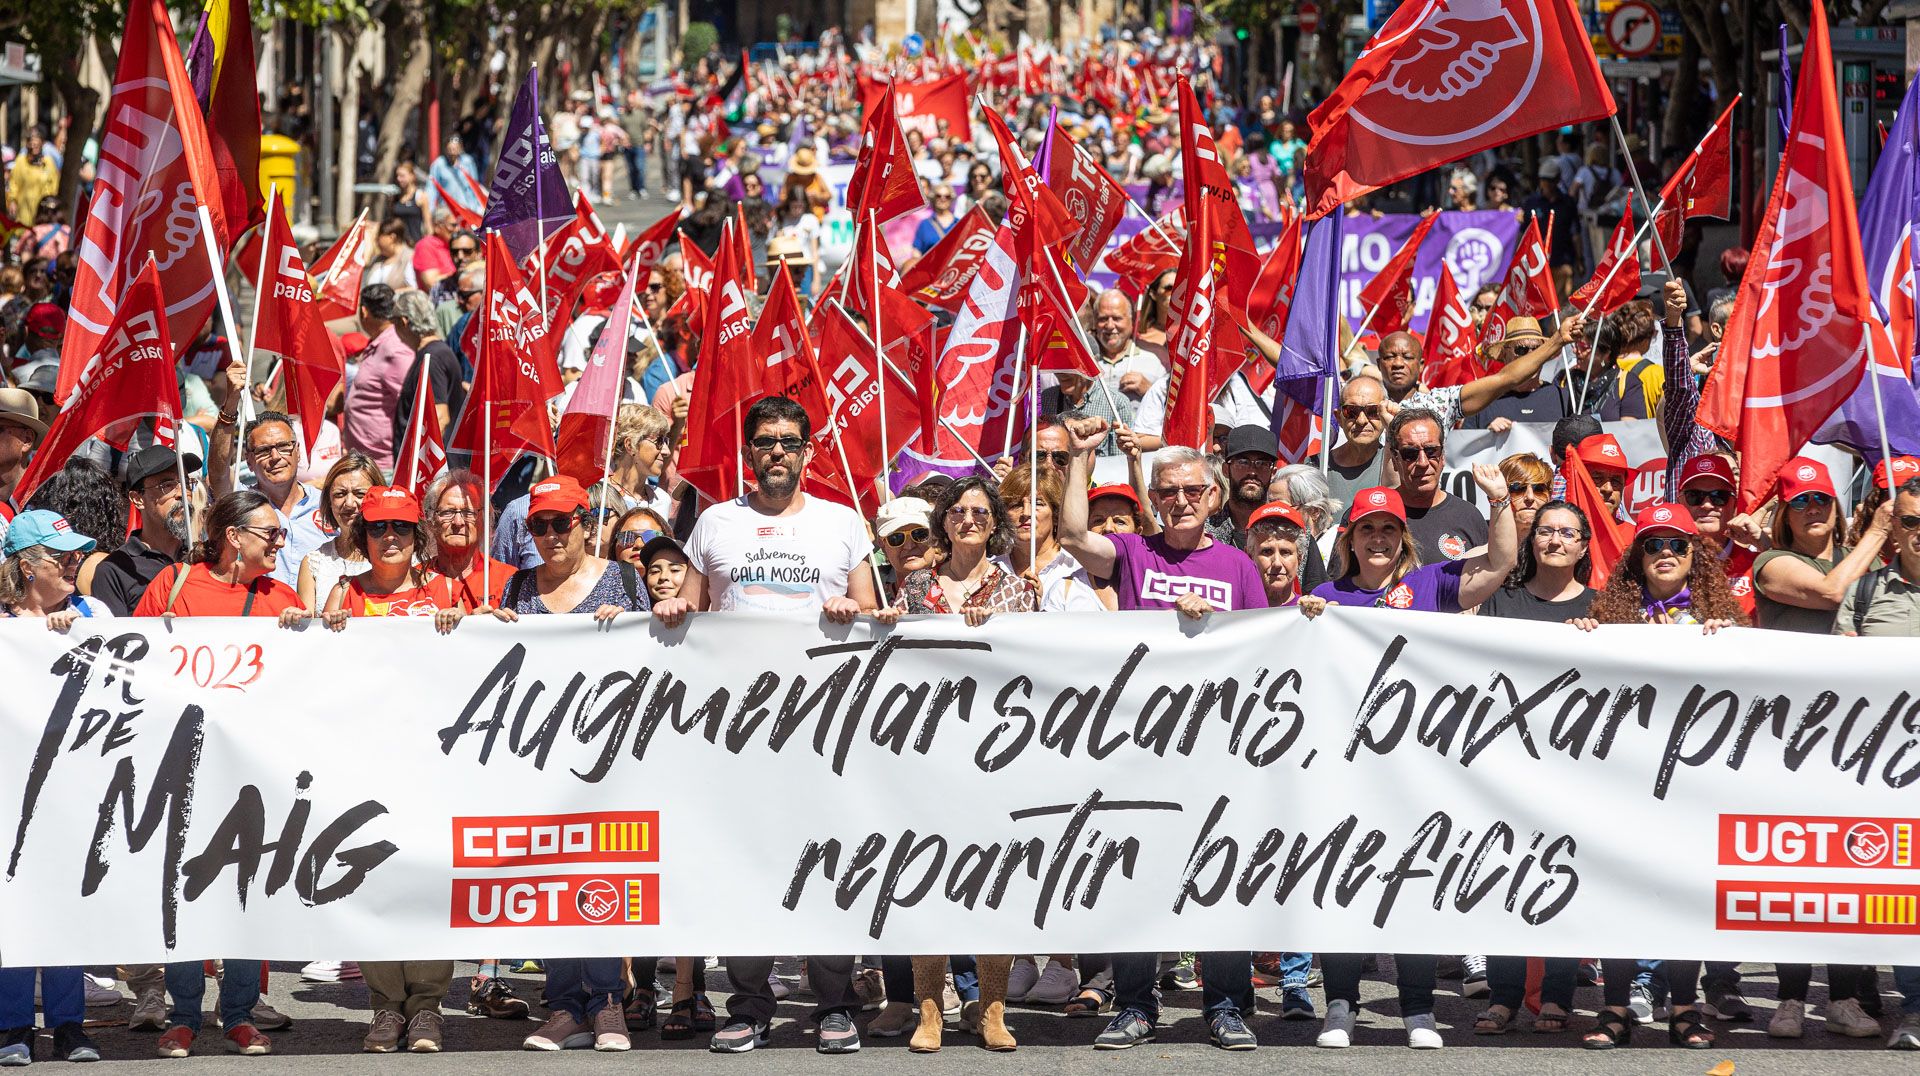 Manifestación del Primero de Mayo en Alicante